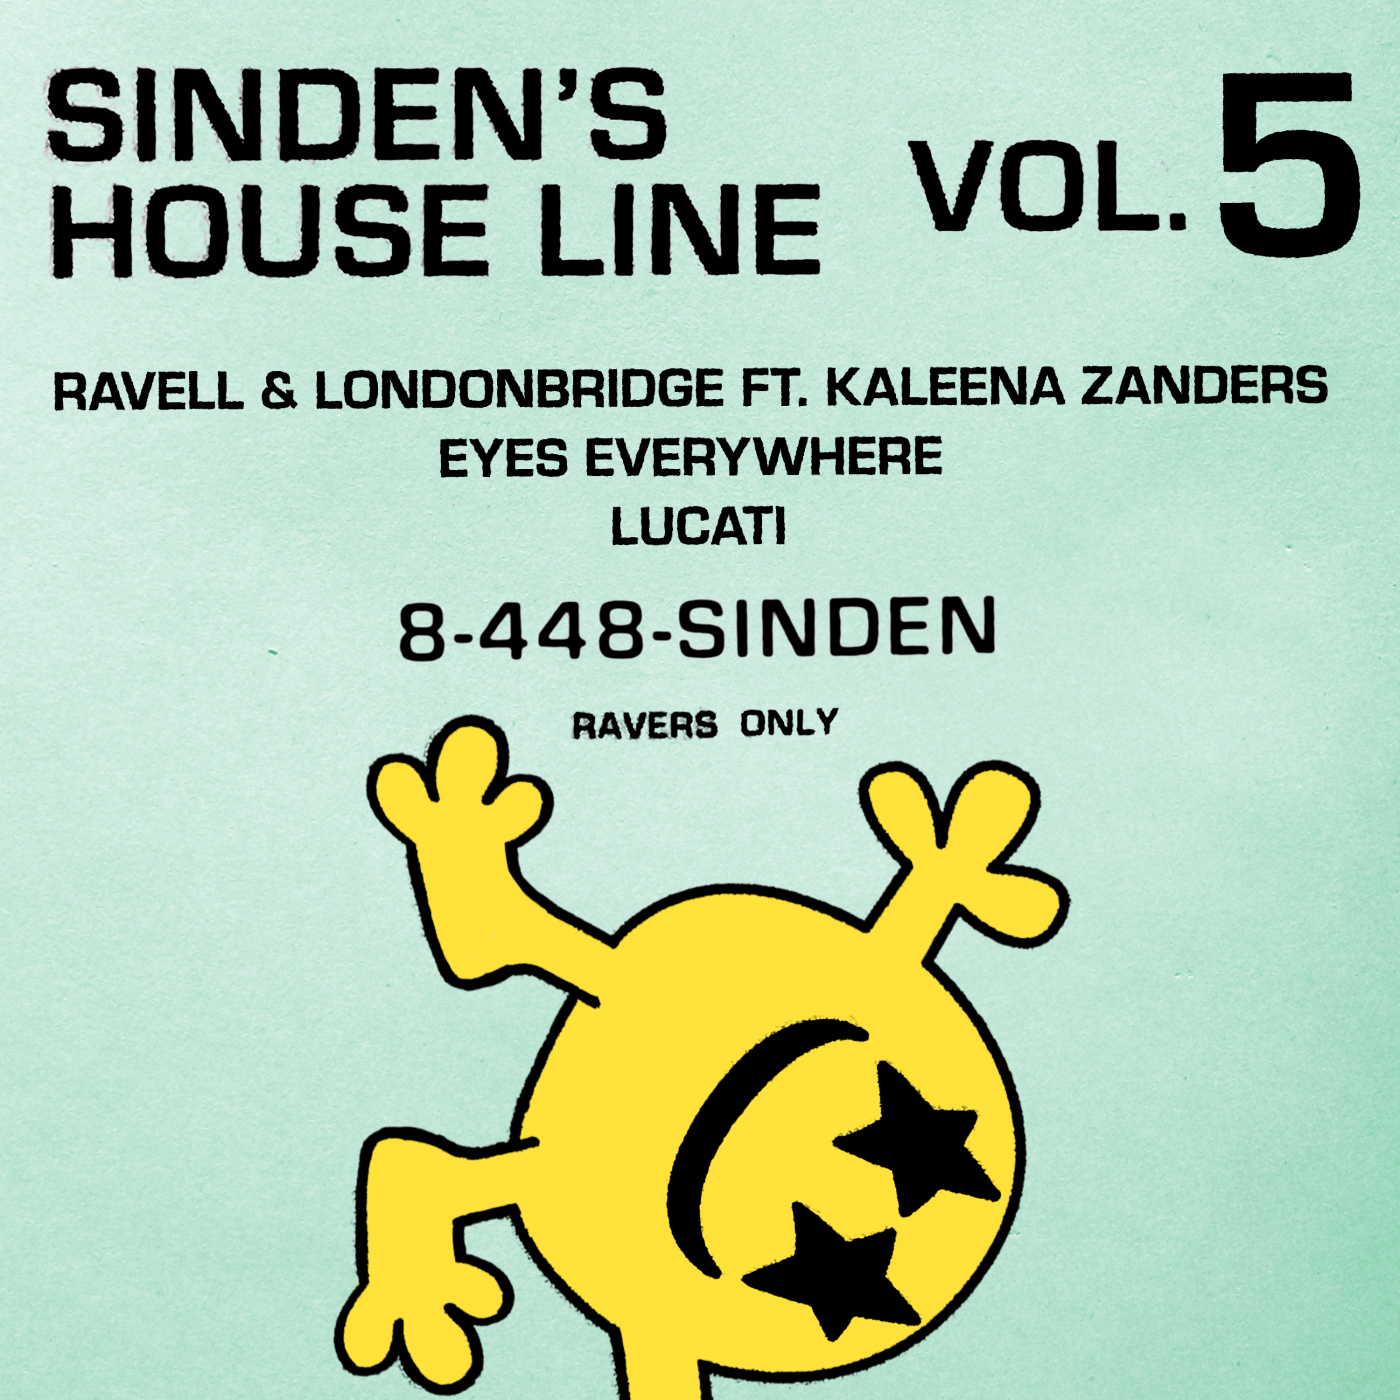 Sinden's House Line Vol. 5